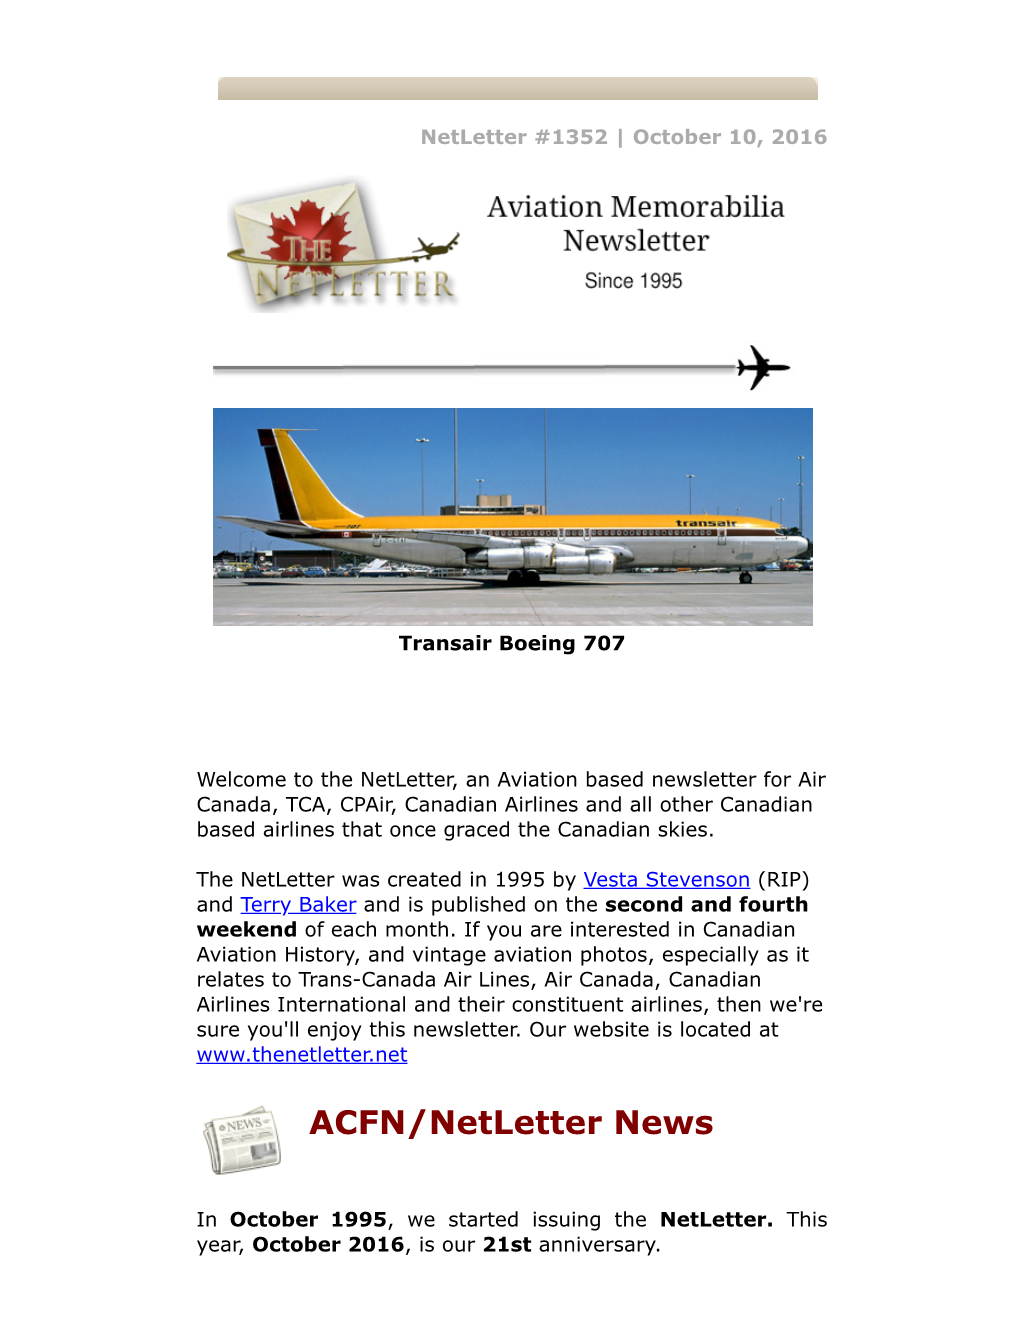 ACFN/Netletter News